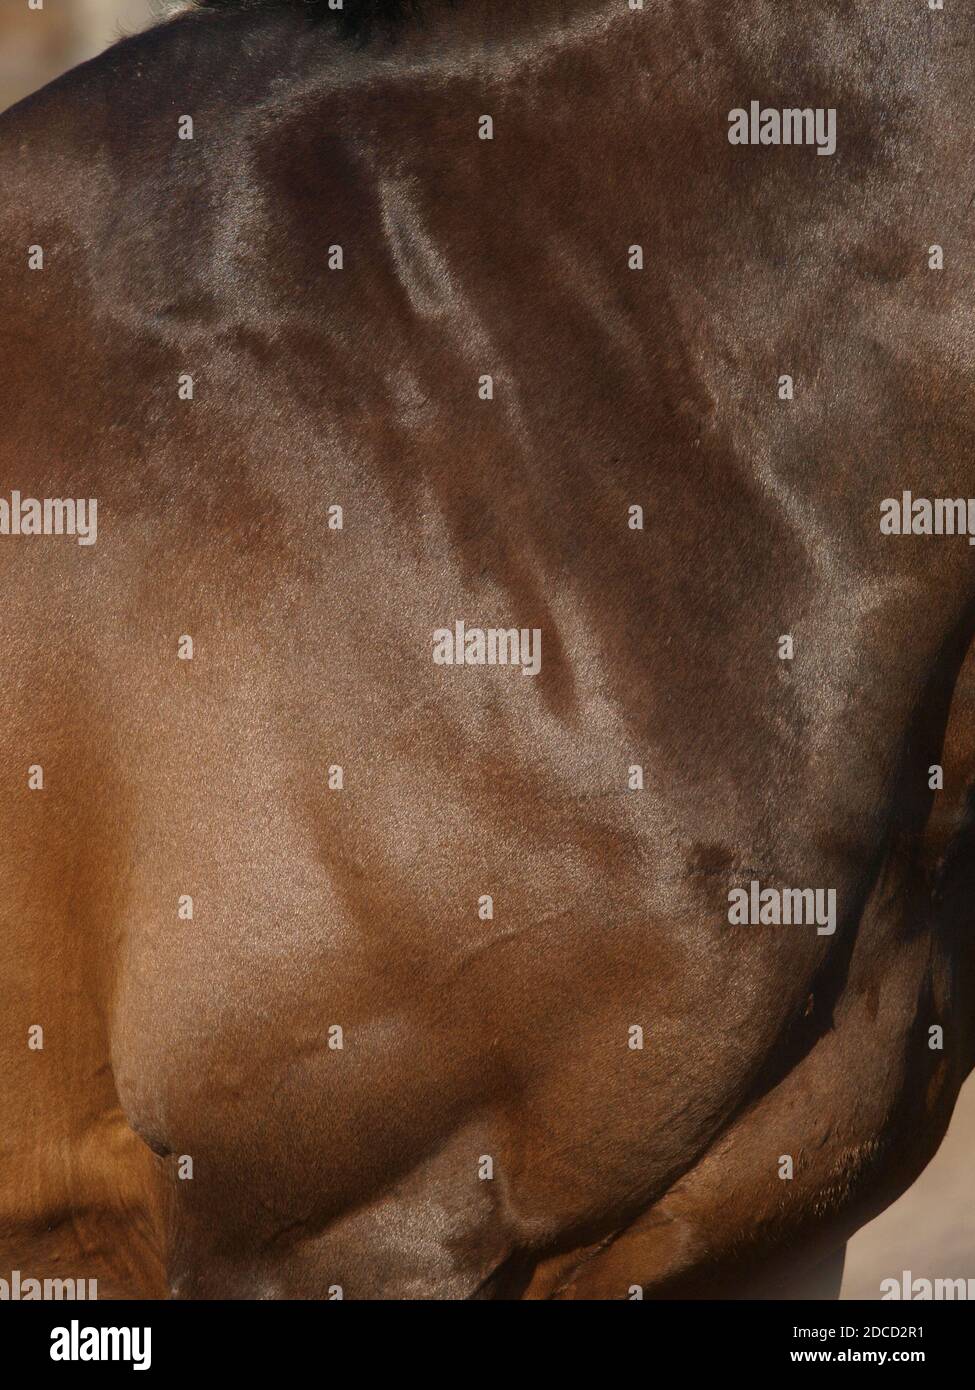 Eine Zusammenfassung der Seite eines Pferdes, die einen gesunden Glanz auf seinem Fell und Zustand zeigt. Stockfoto